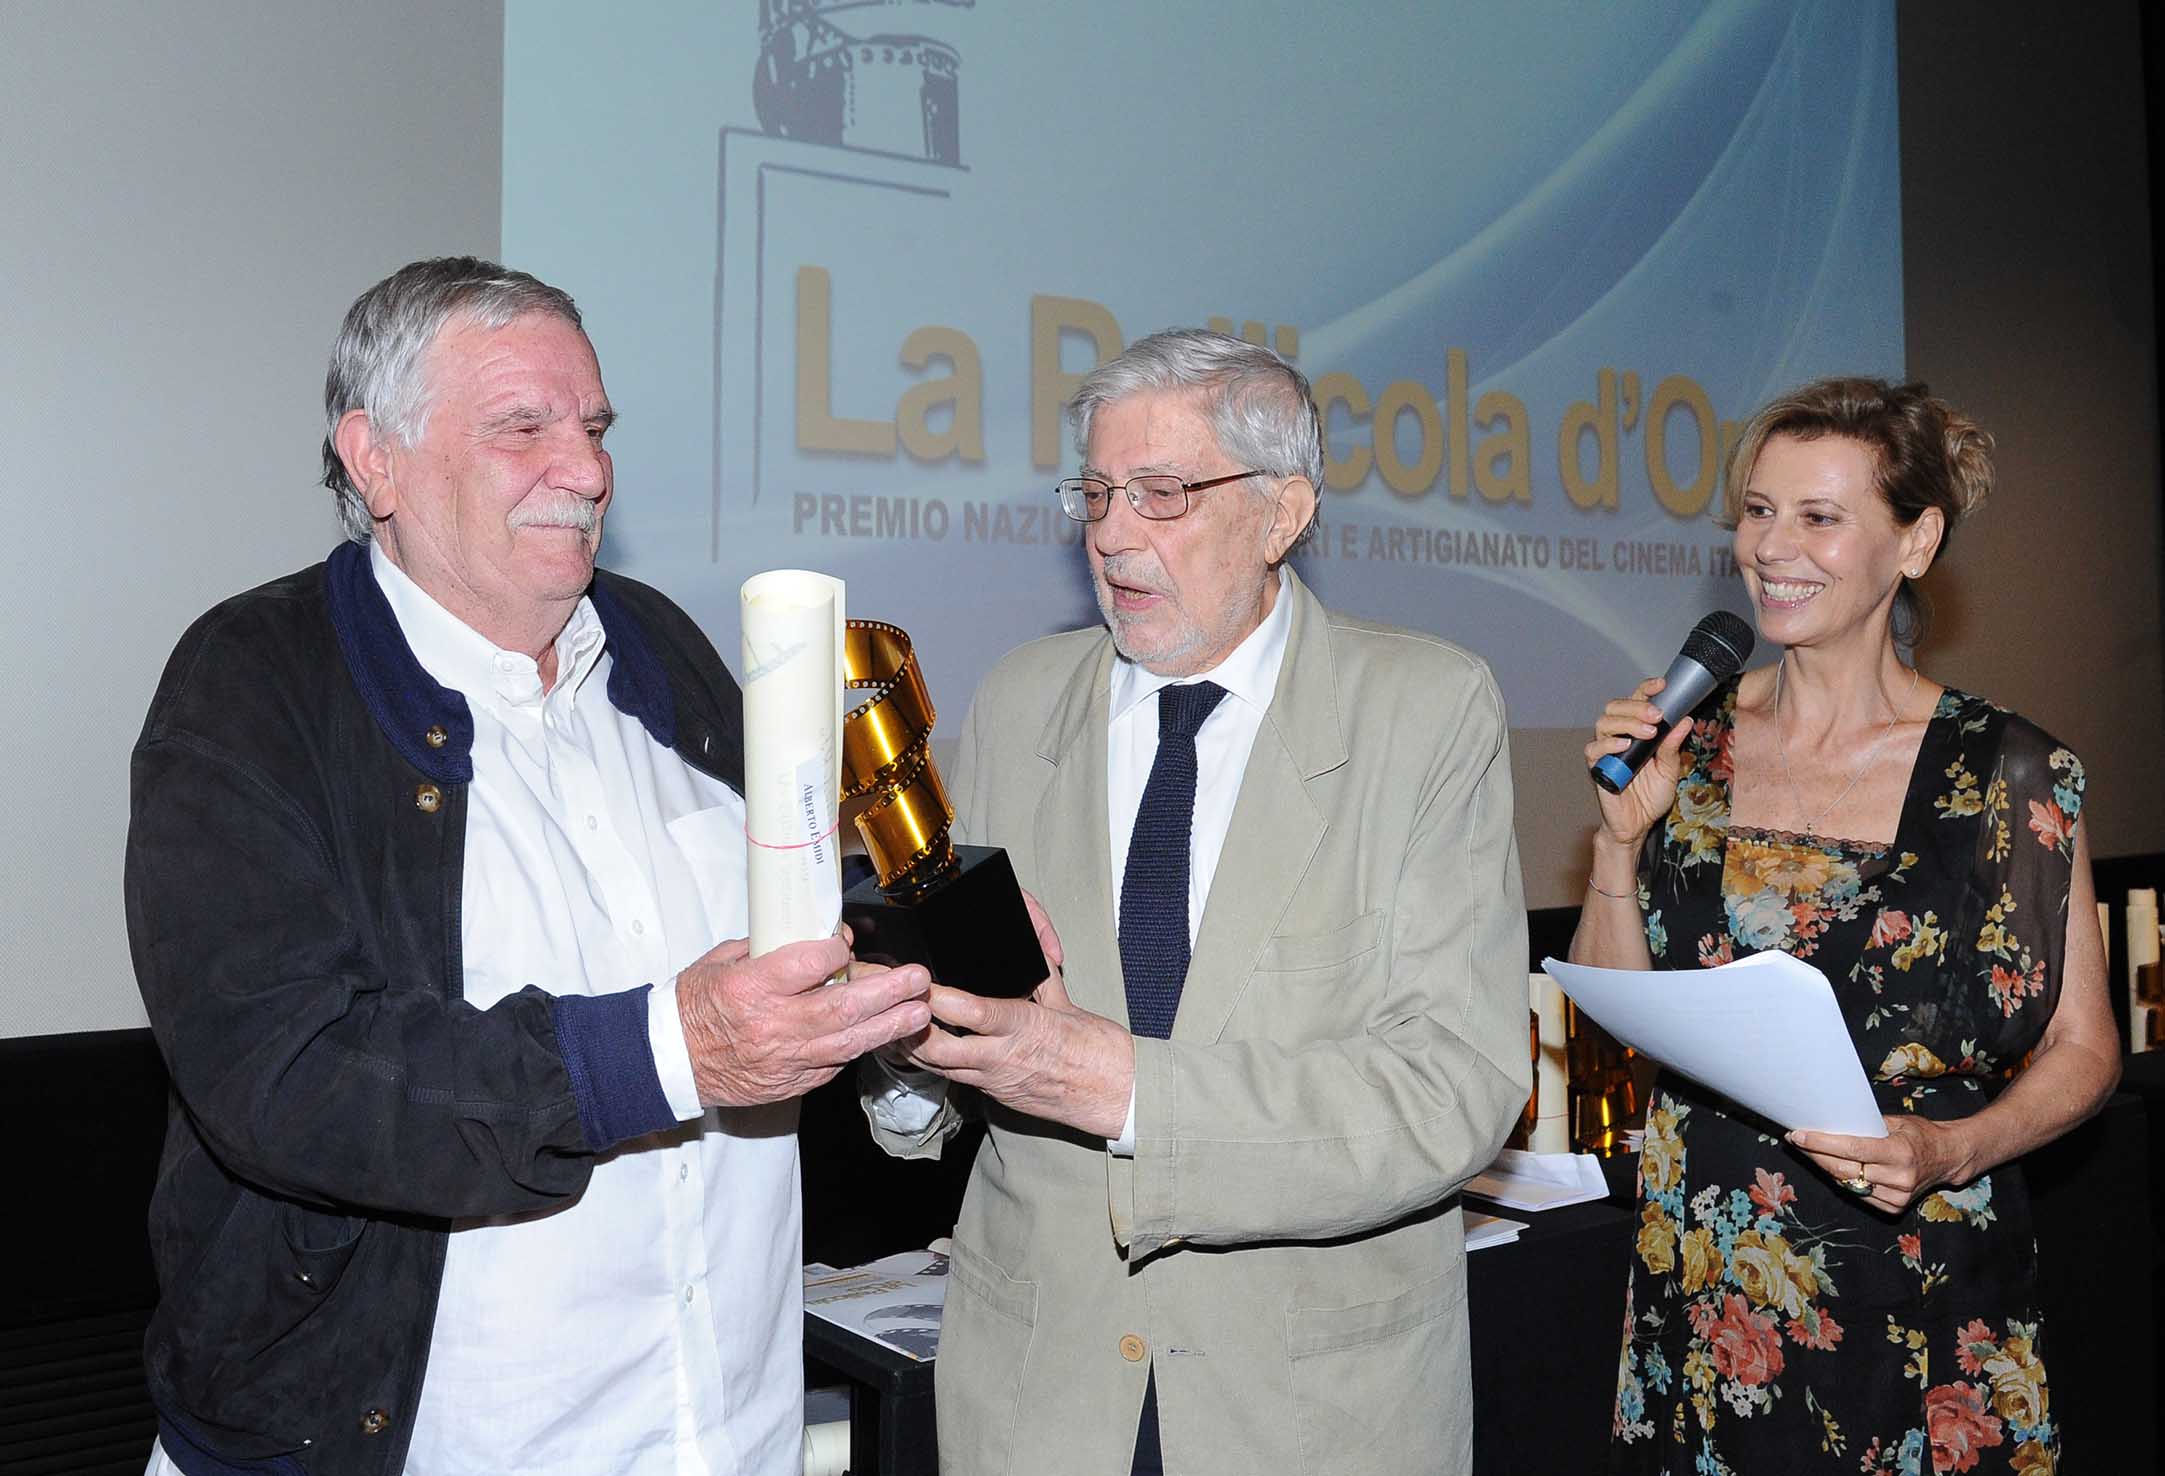 “La Pellicola d’Oro”, i Premiati 2014